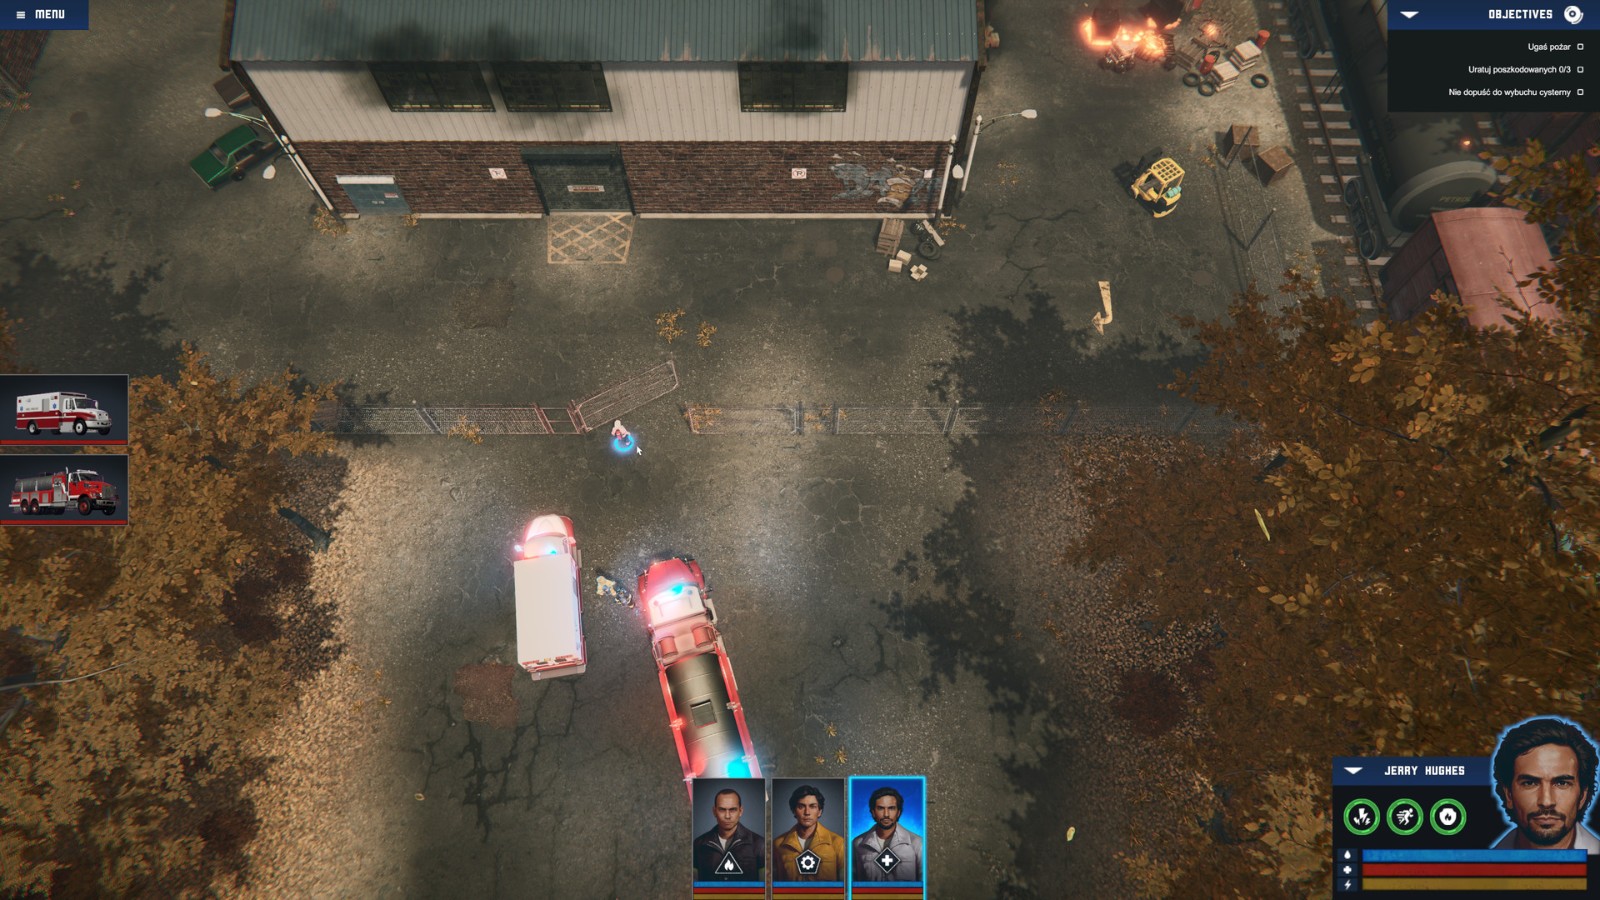 消防员主题游戏《生死悍将》公布 已上架Steam、支持简中